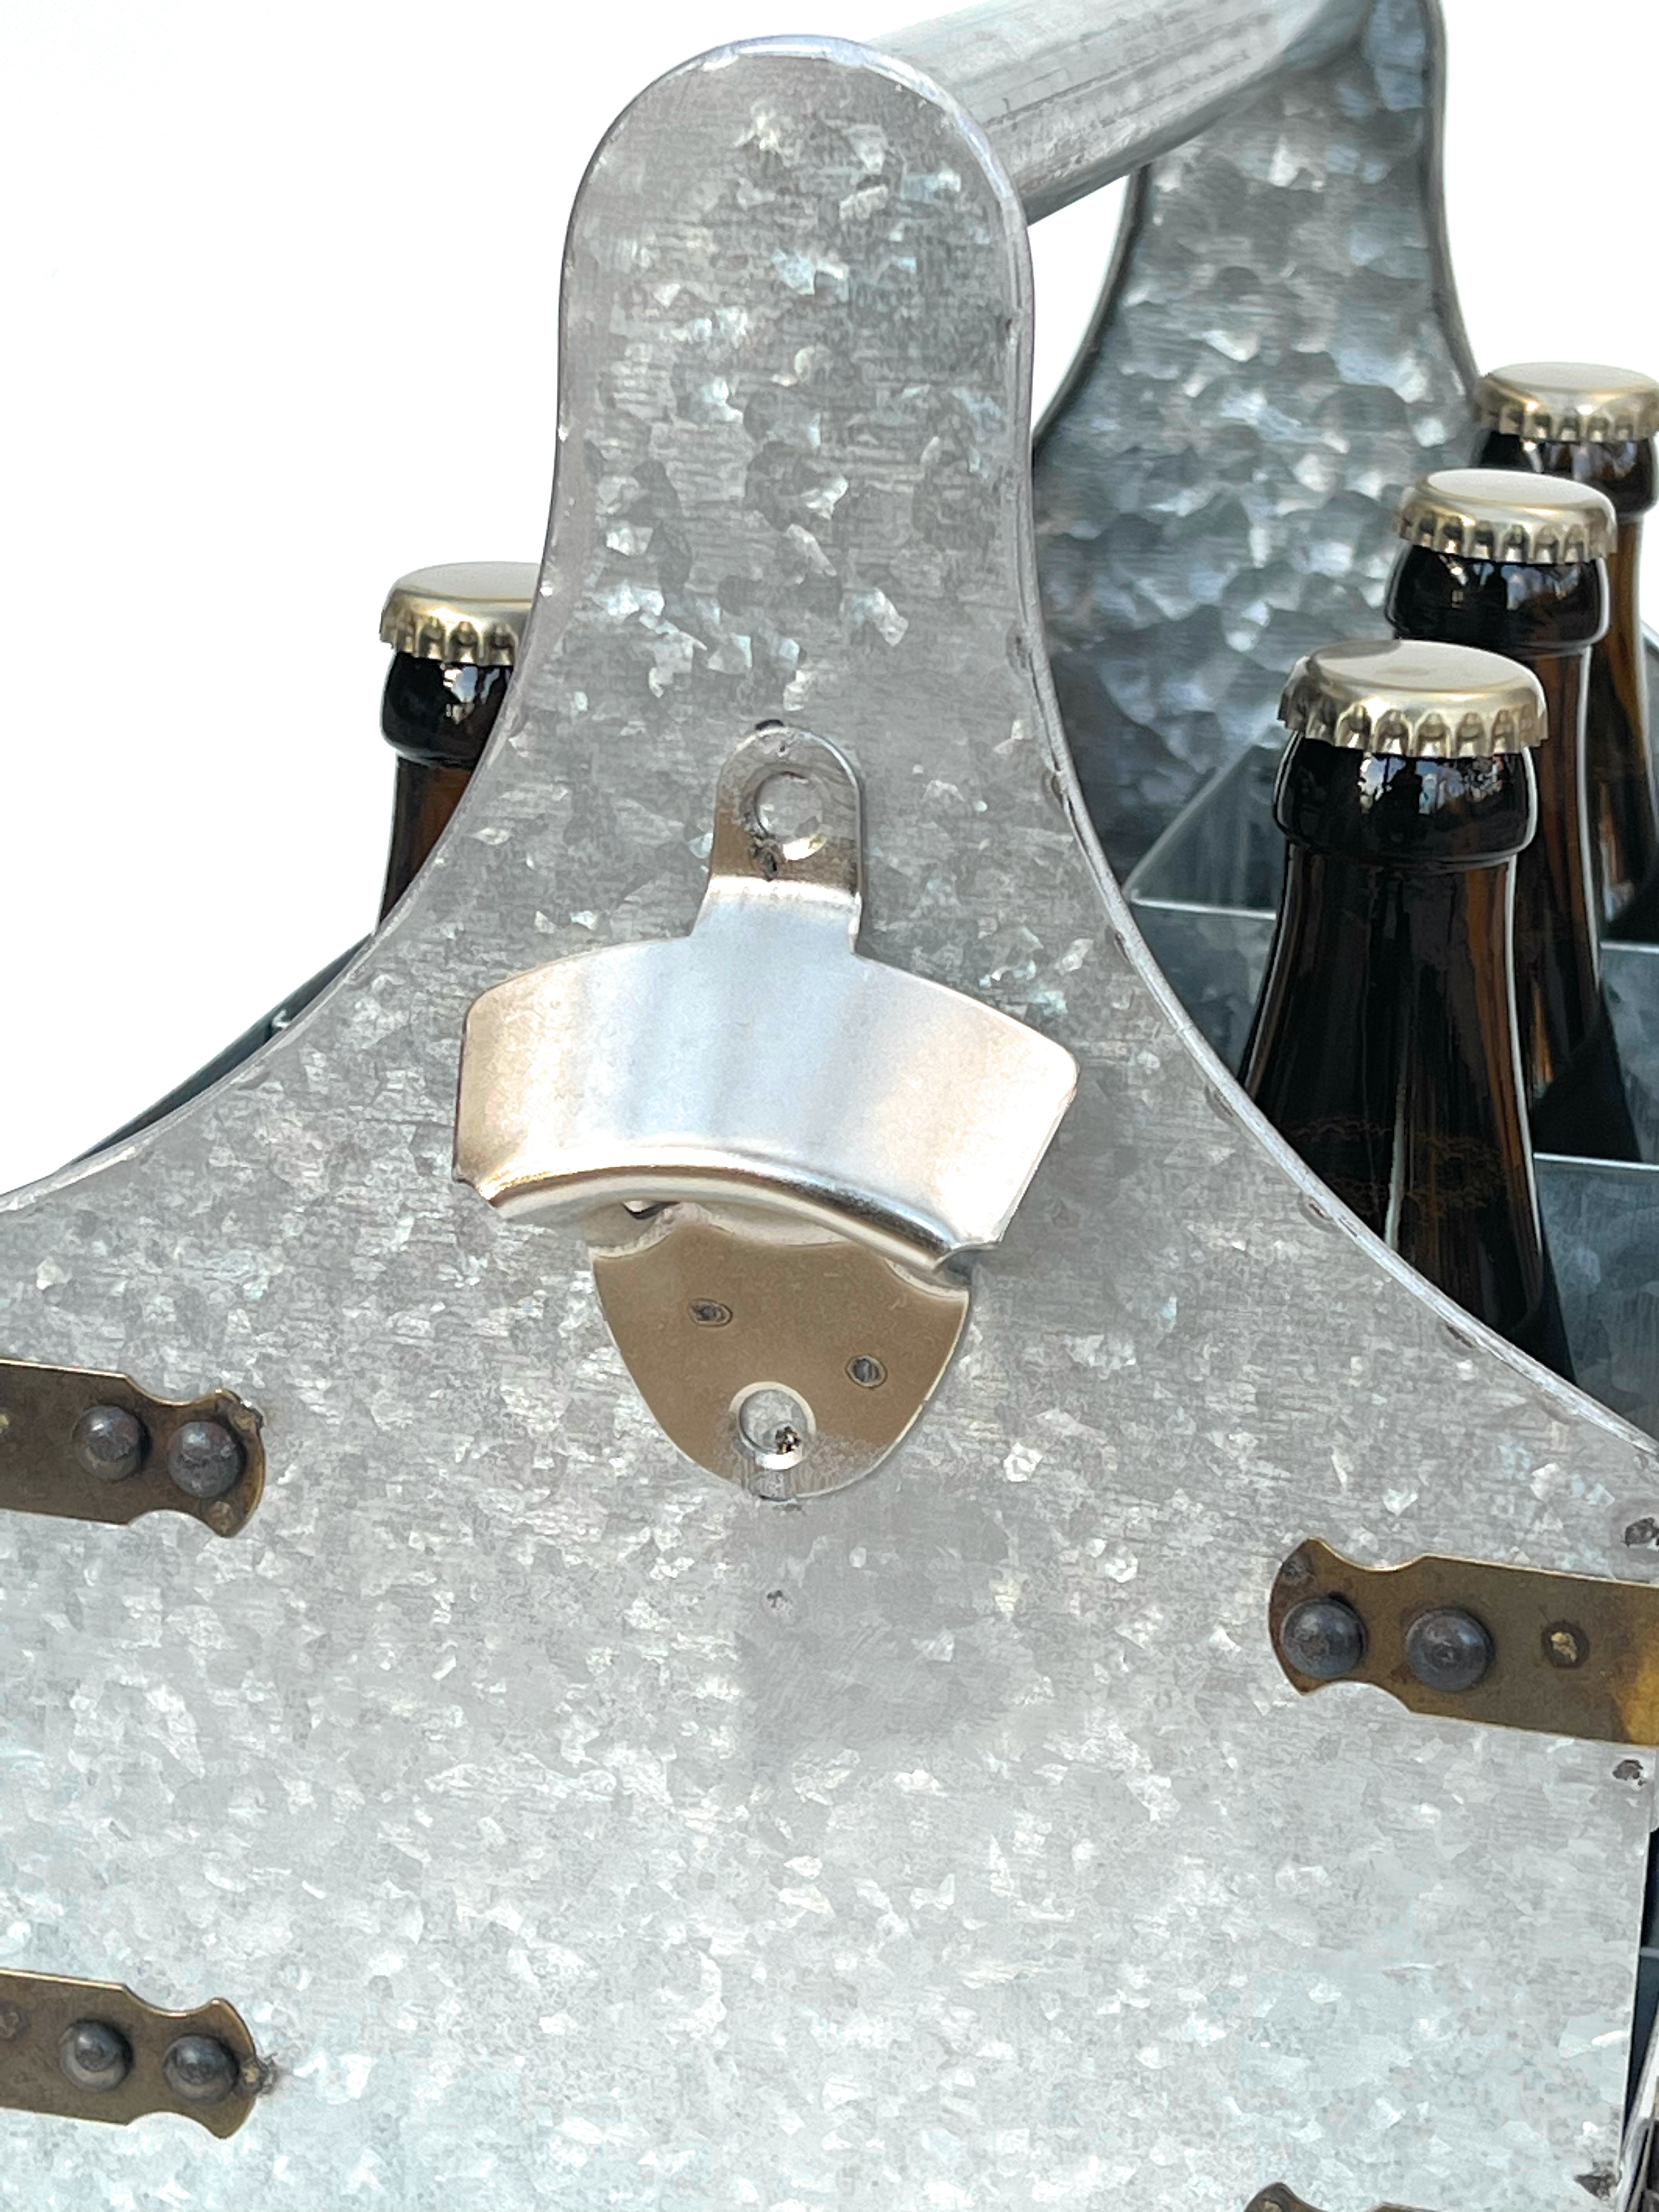 DanDiBo Bierträger Metall mit Öffner 96403 Flaschenträger 6 Flaschen  Flaschenöffner Flaschenkorb Männerhandtasche Männergeschenke - DanDiBo- Ambiente